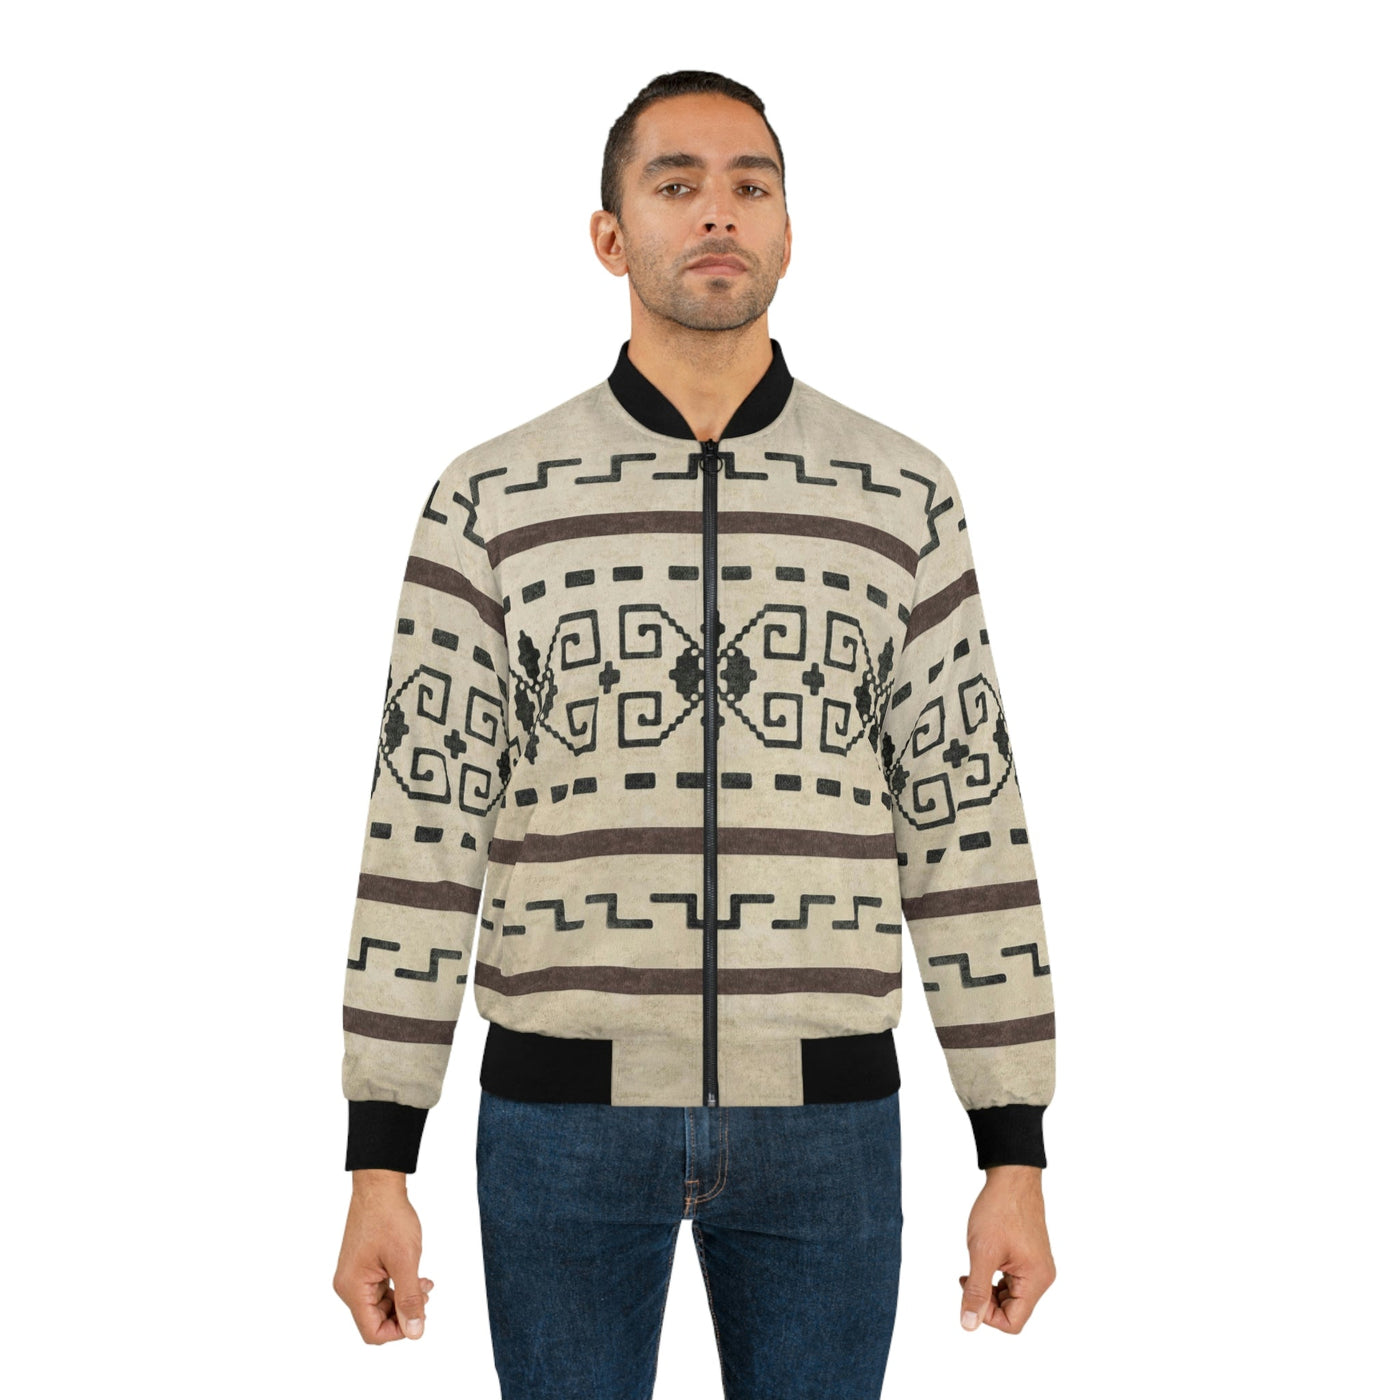 The Dude's Jacket V2 (Lightweight Bomber Jacket) W/ Iconic Lebowski Sweater Pattern